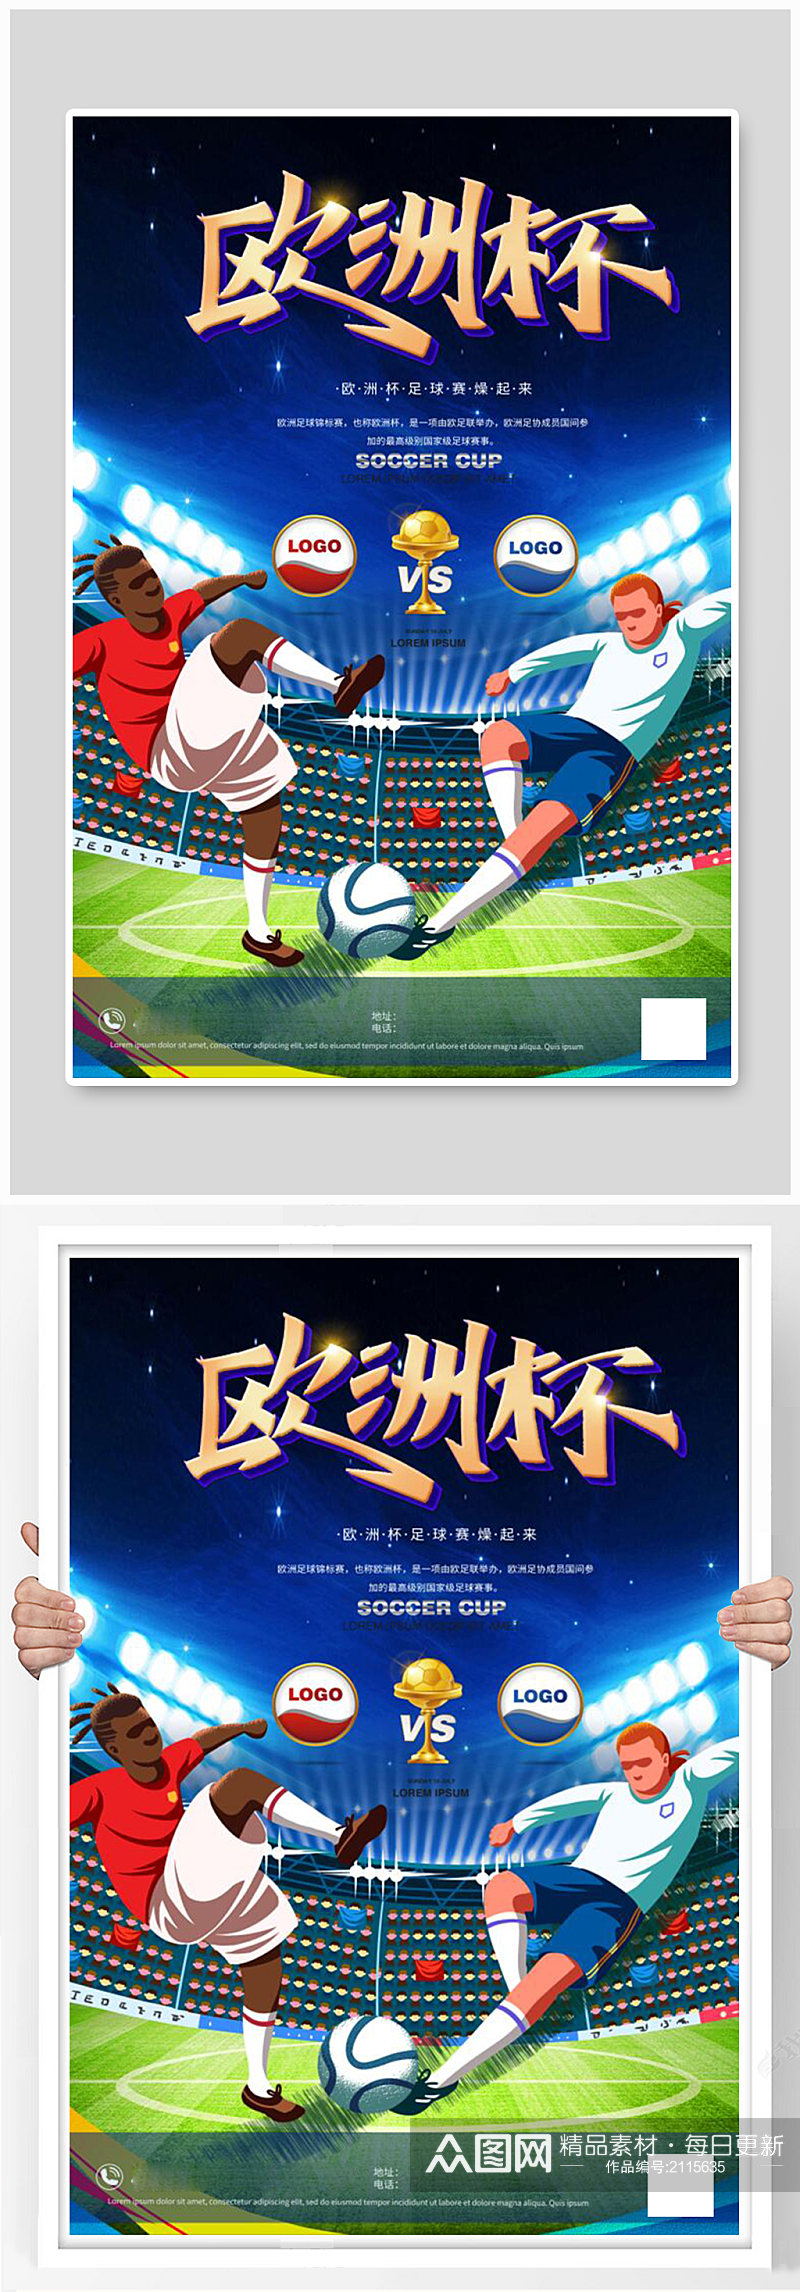 欧洲杯足球赛蓝色合成插画海报素材